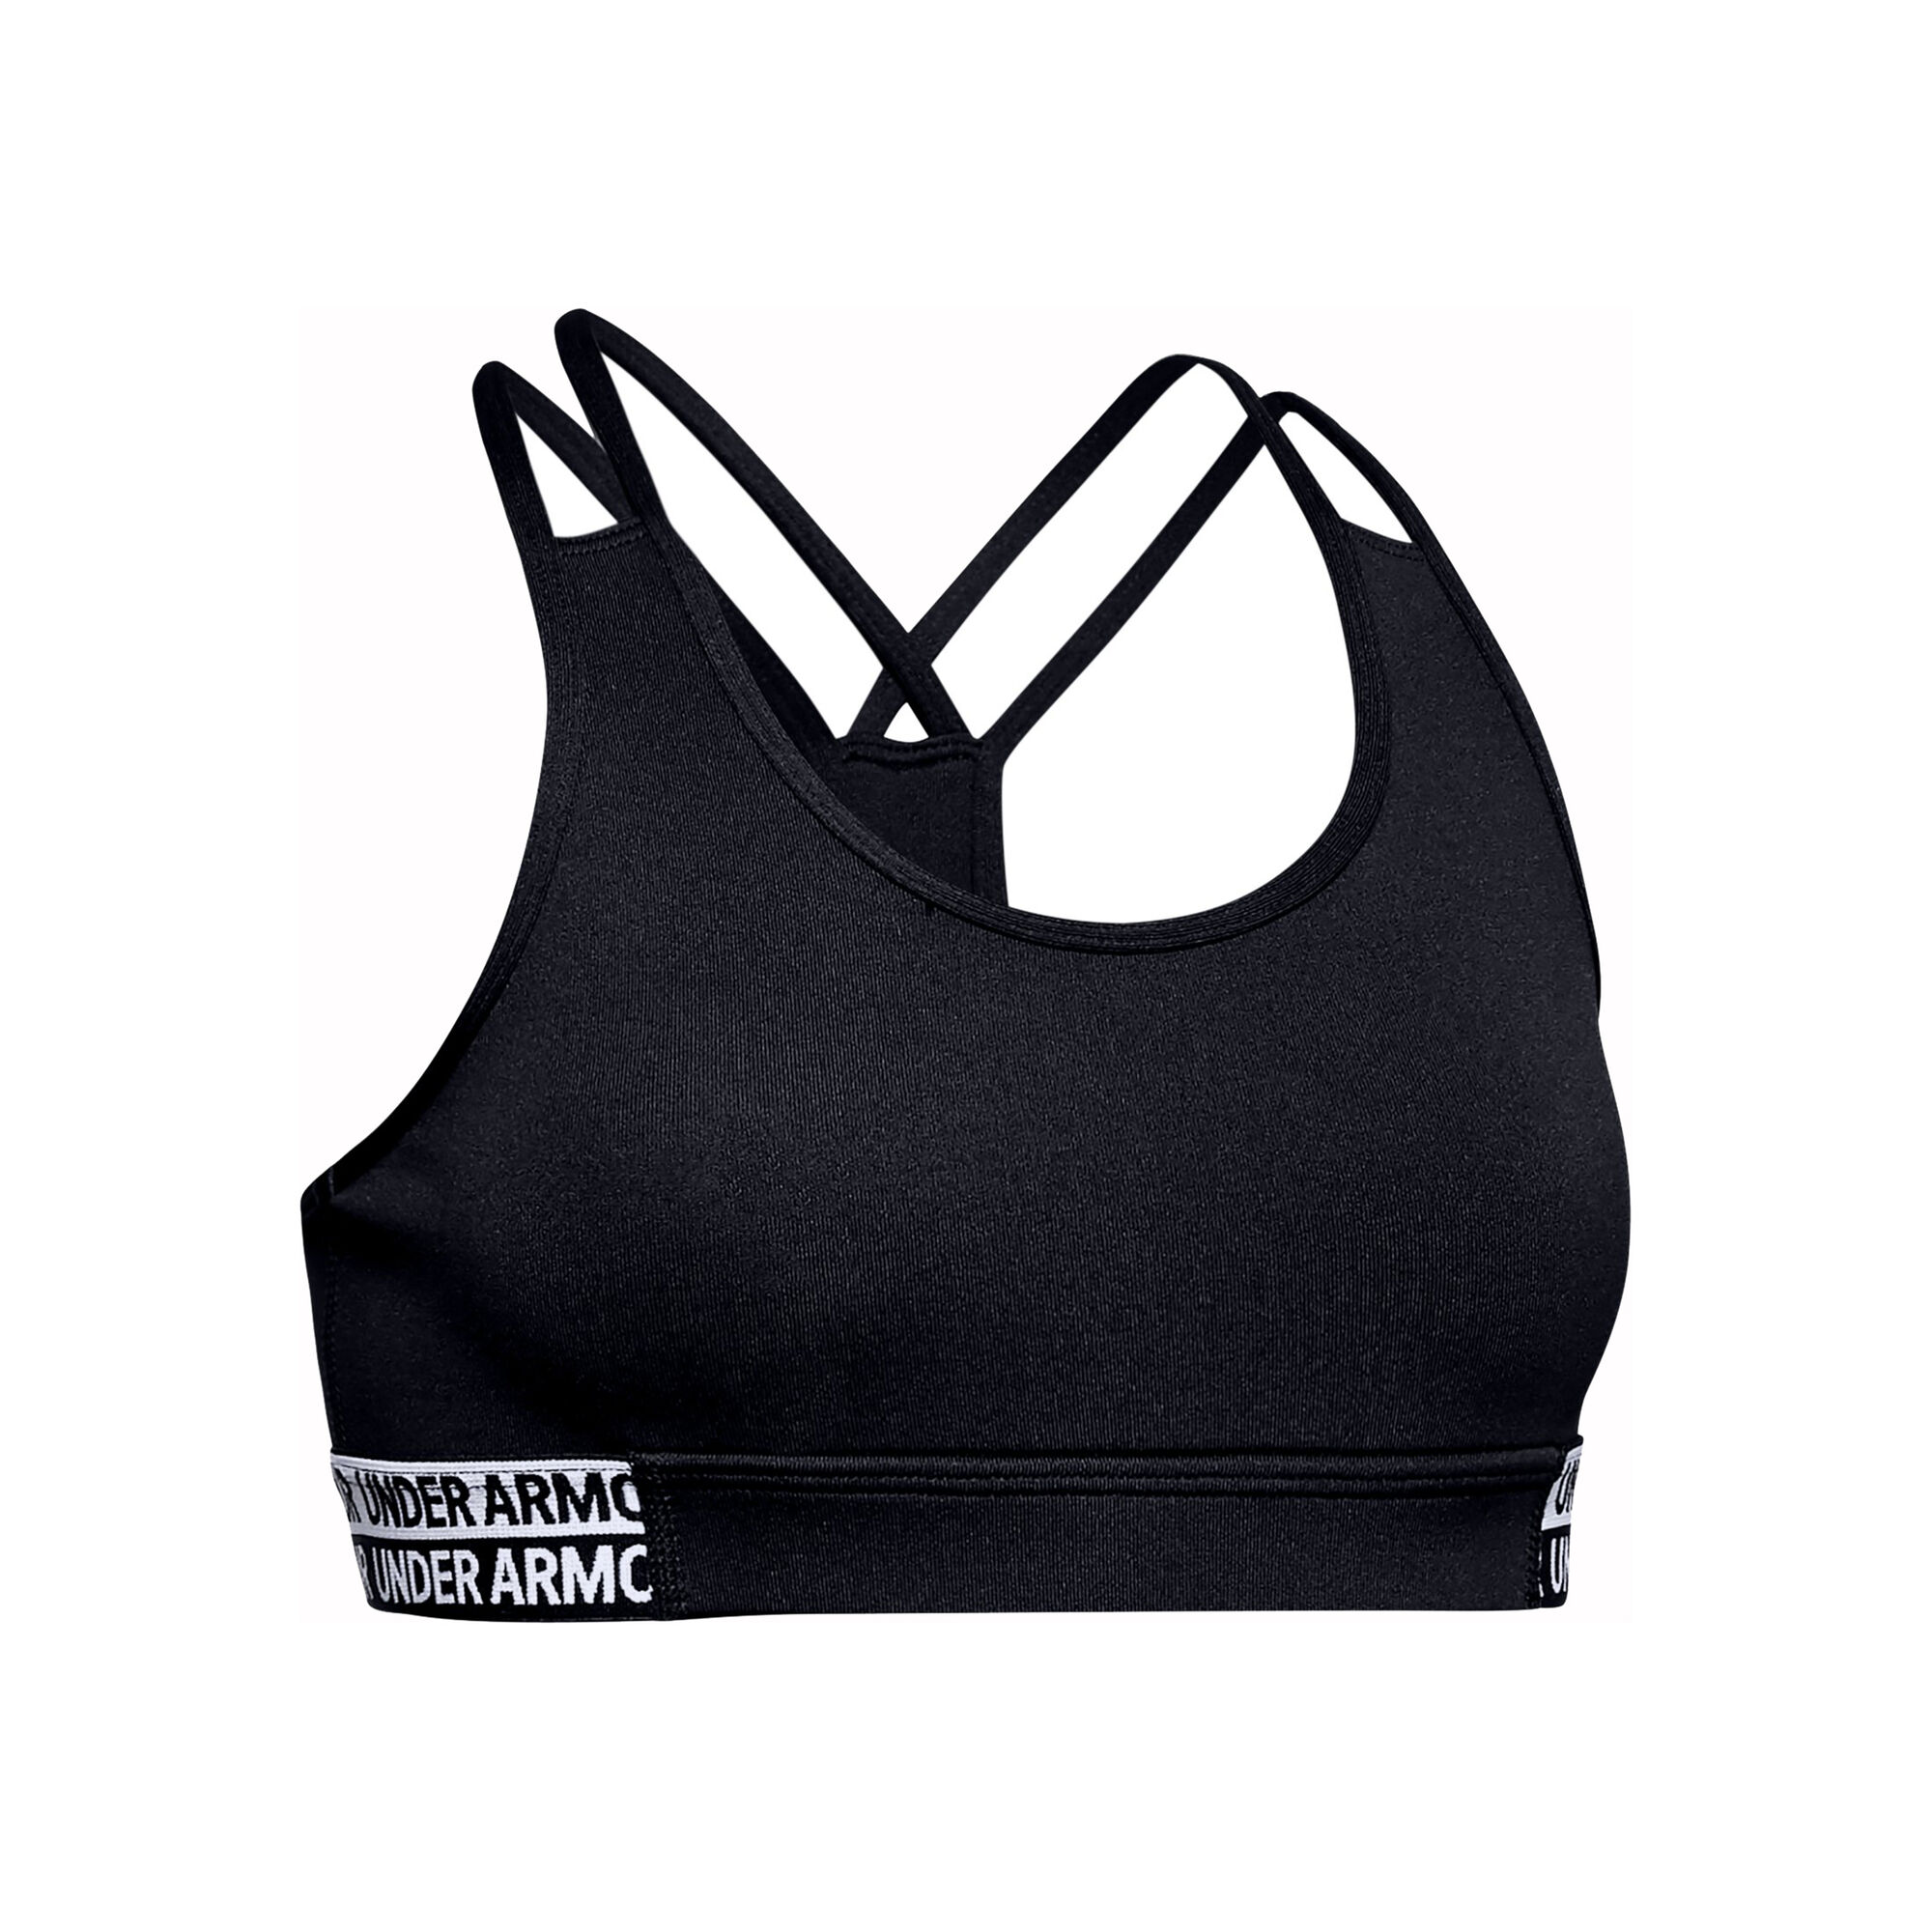 Buy Under Armour Heatgear Sports Bras Girls Black, White online